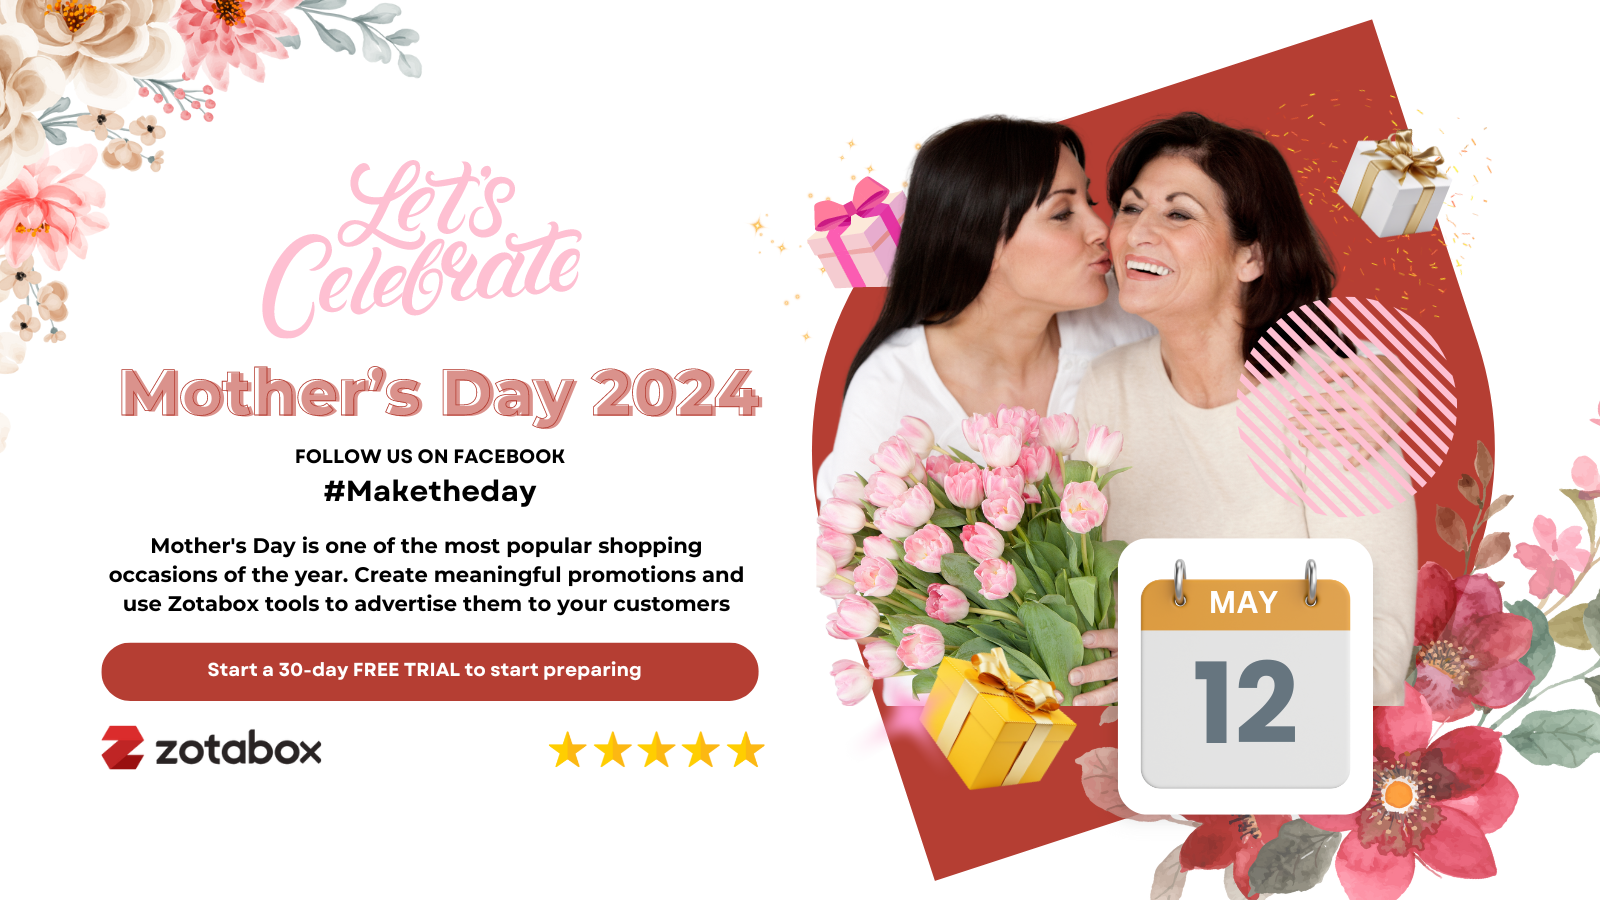 Promoción del Día de la Madre 2024 